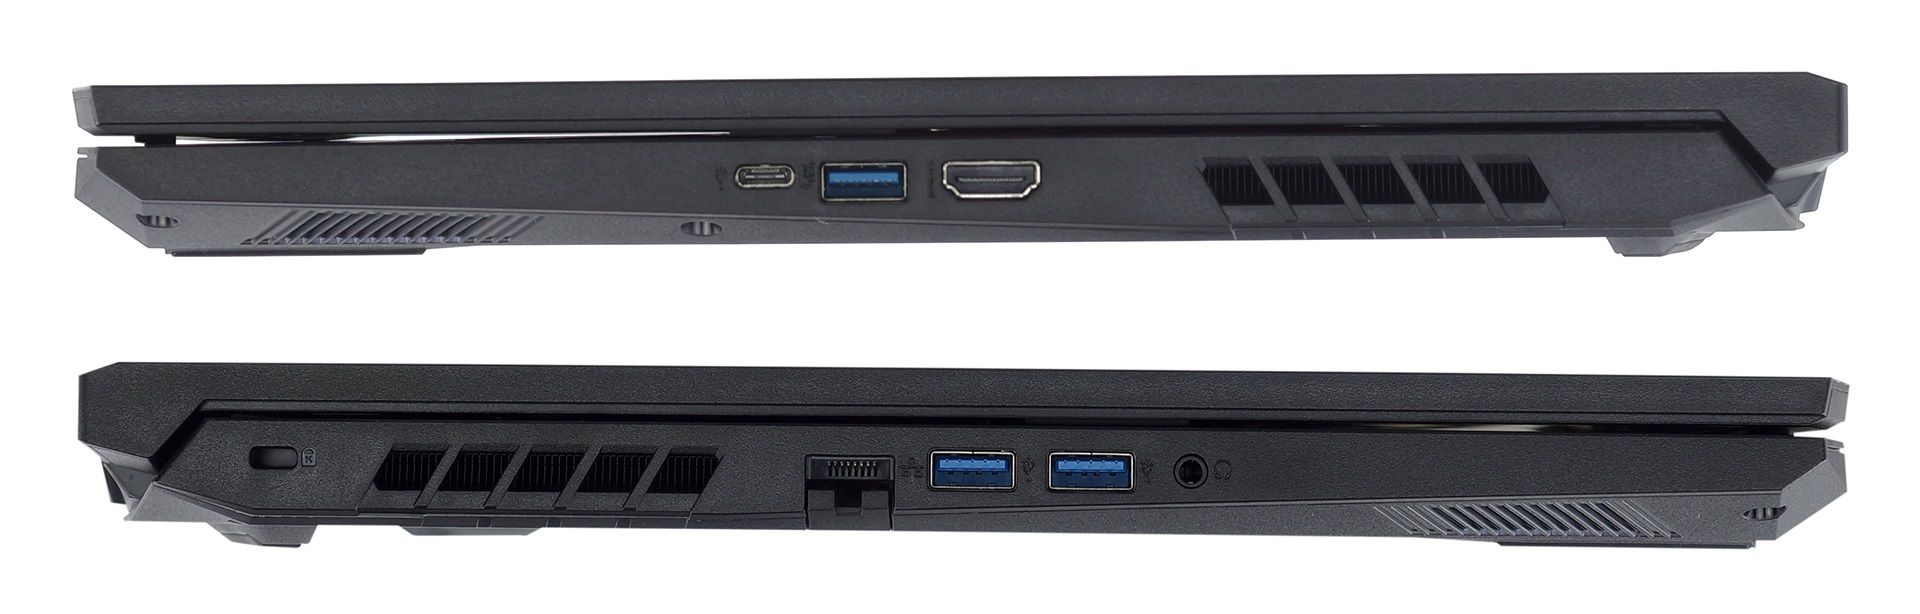 ket-noi-laptop-Acer-Nitro-5 AN517-54